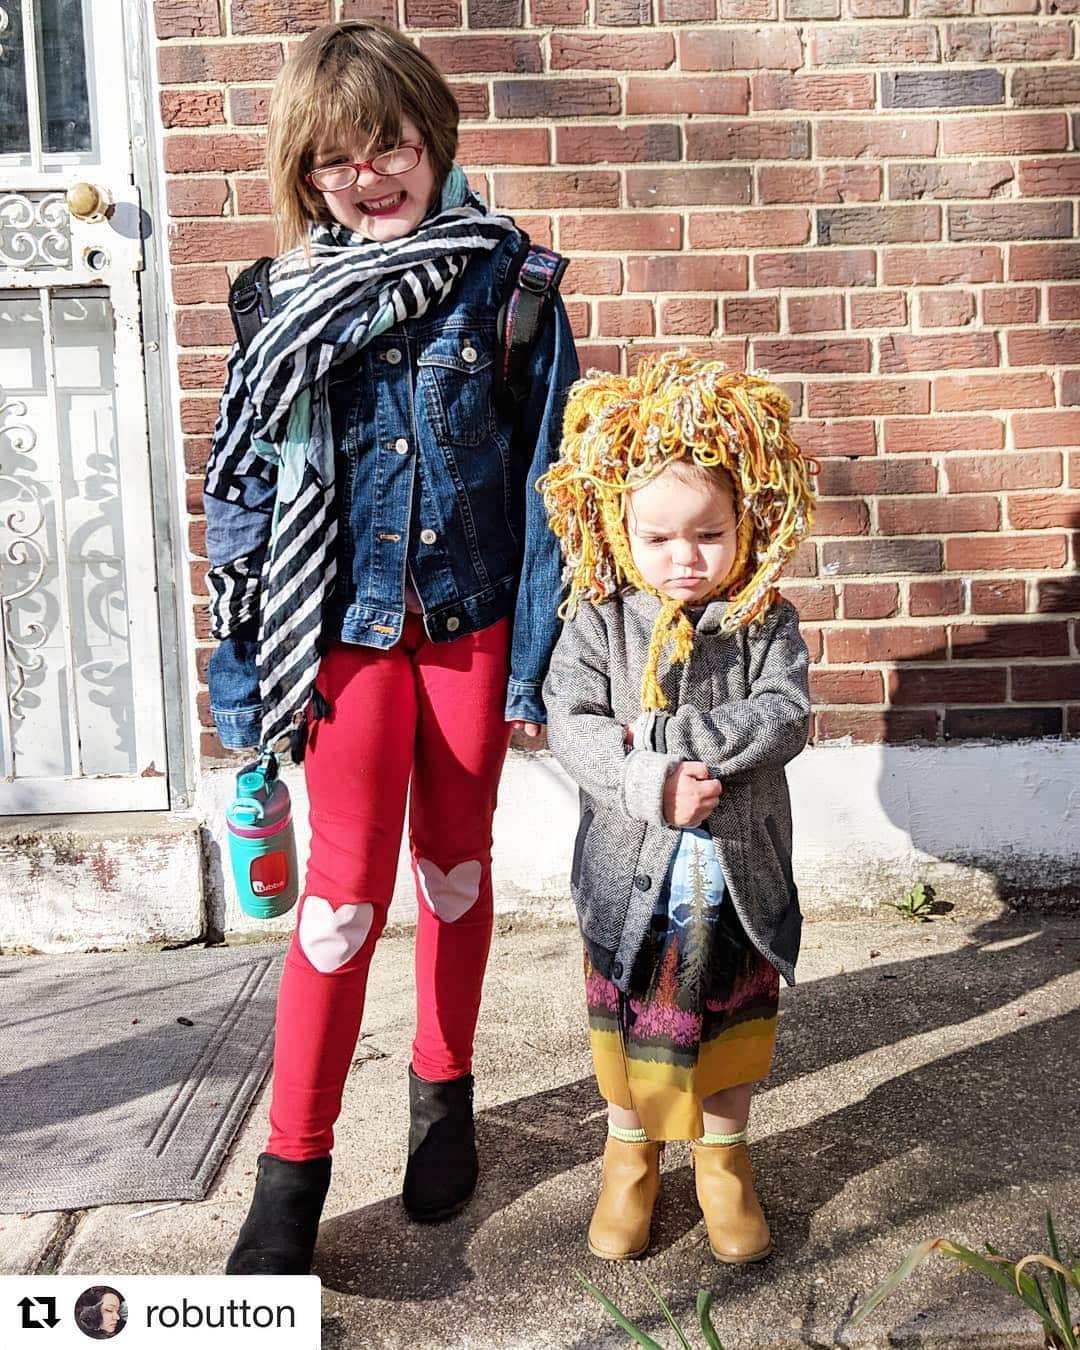 "Модная революция" : дети, которым родители разрешили одеться самостоятельно (16 фото)